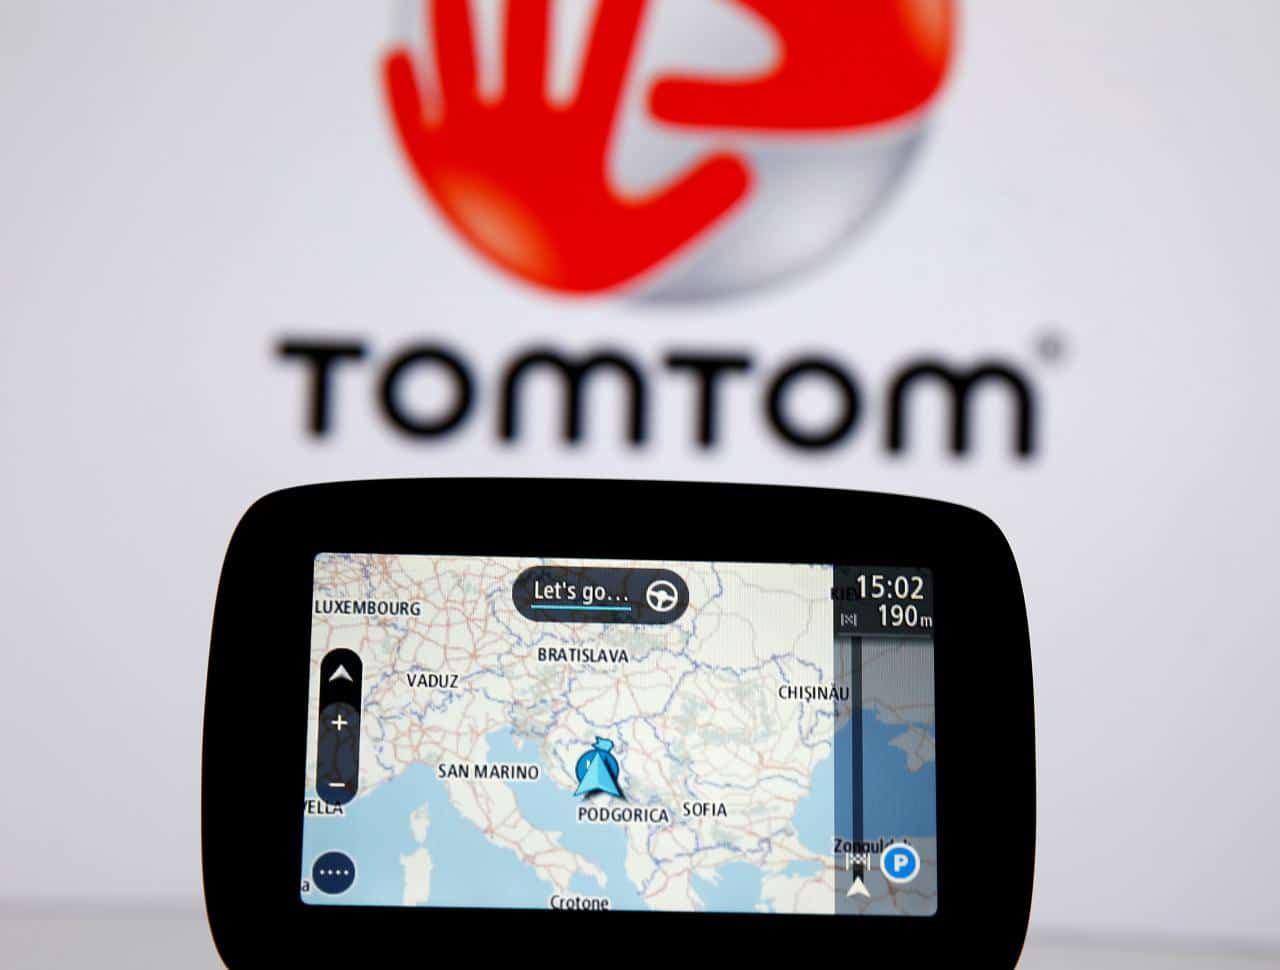 TomTom تنافس جوجل في الخرائط والملاحة